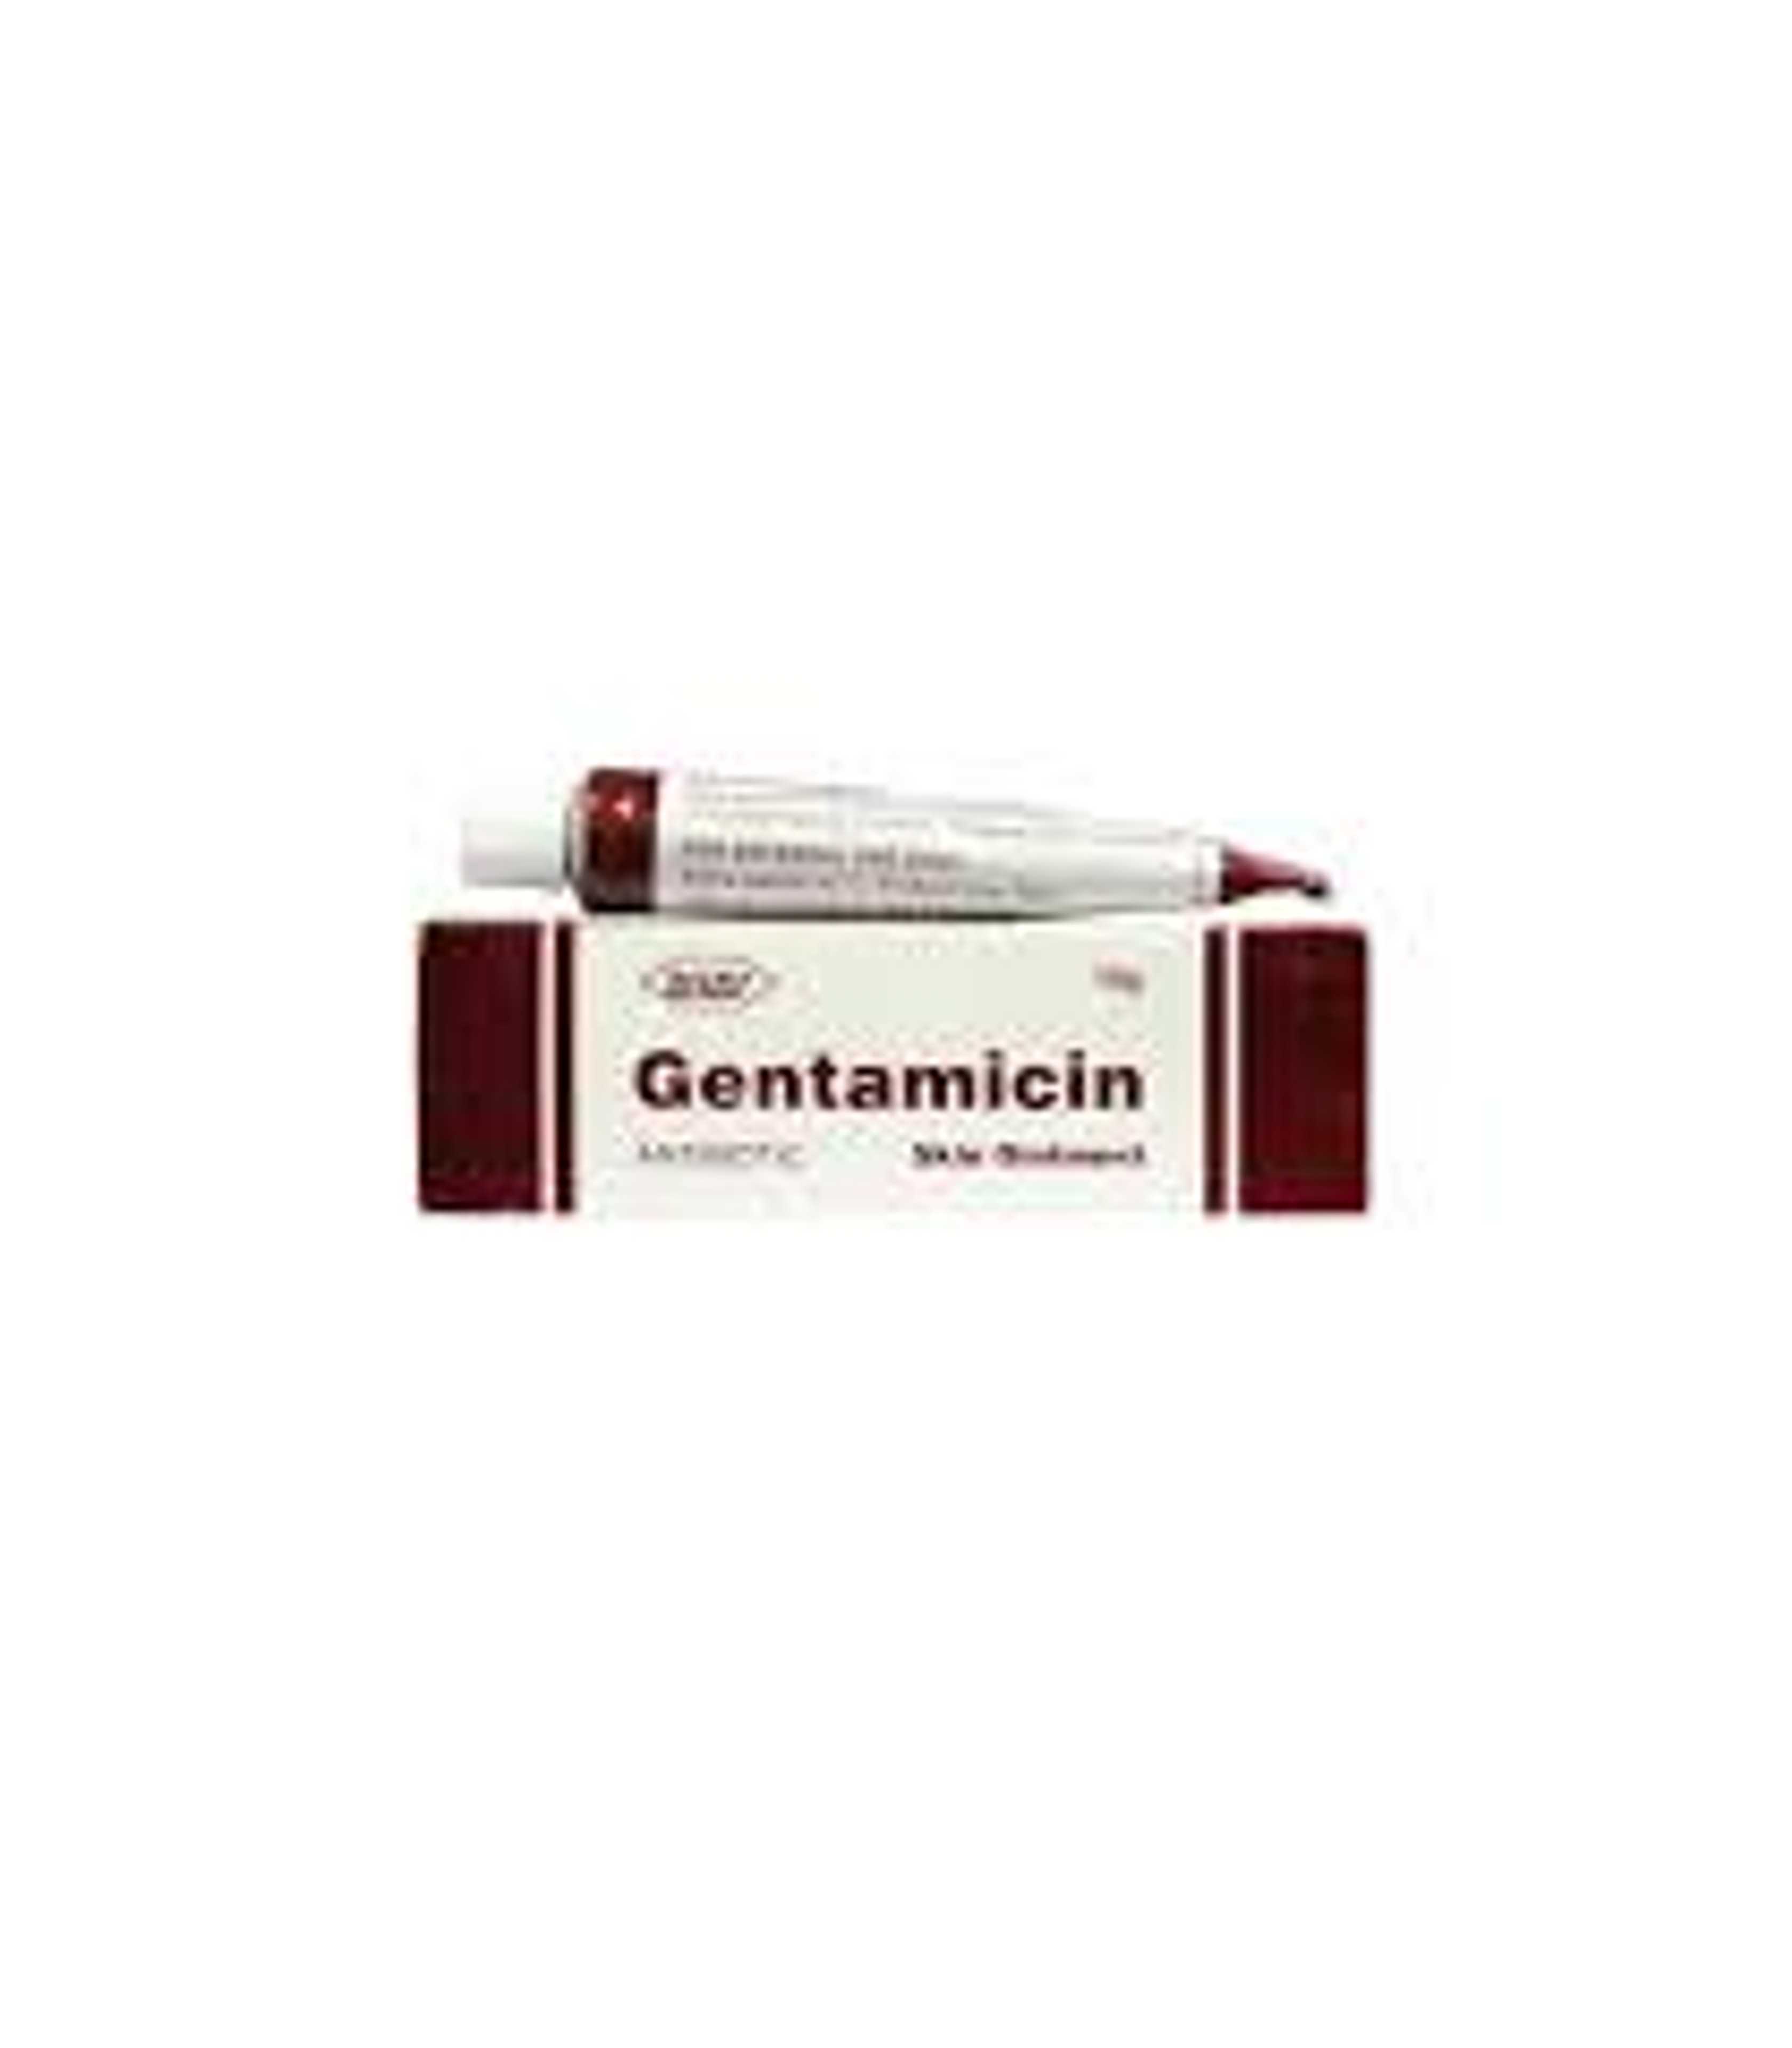 gentamicin cream 